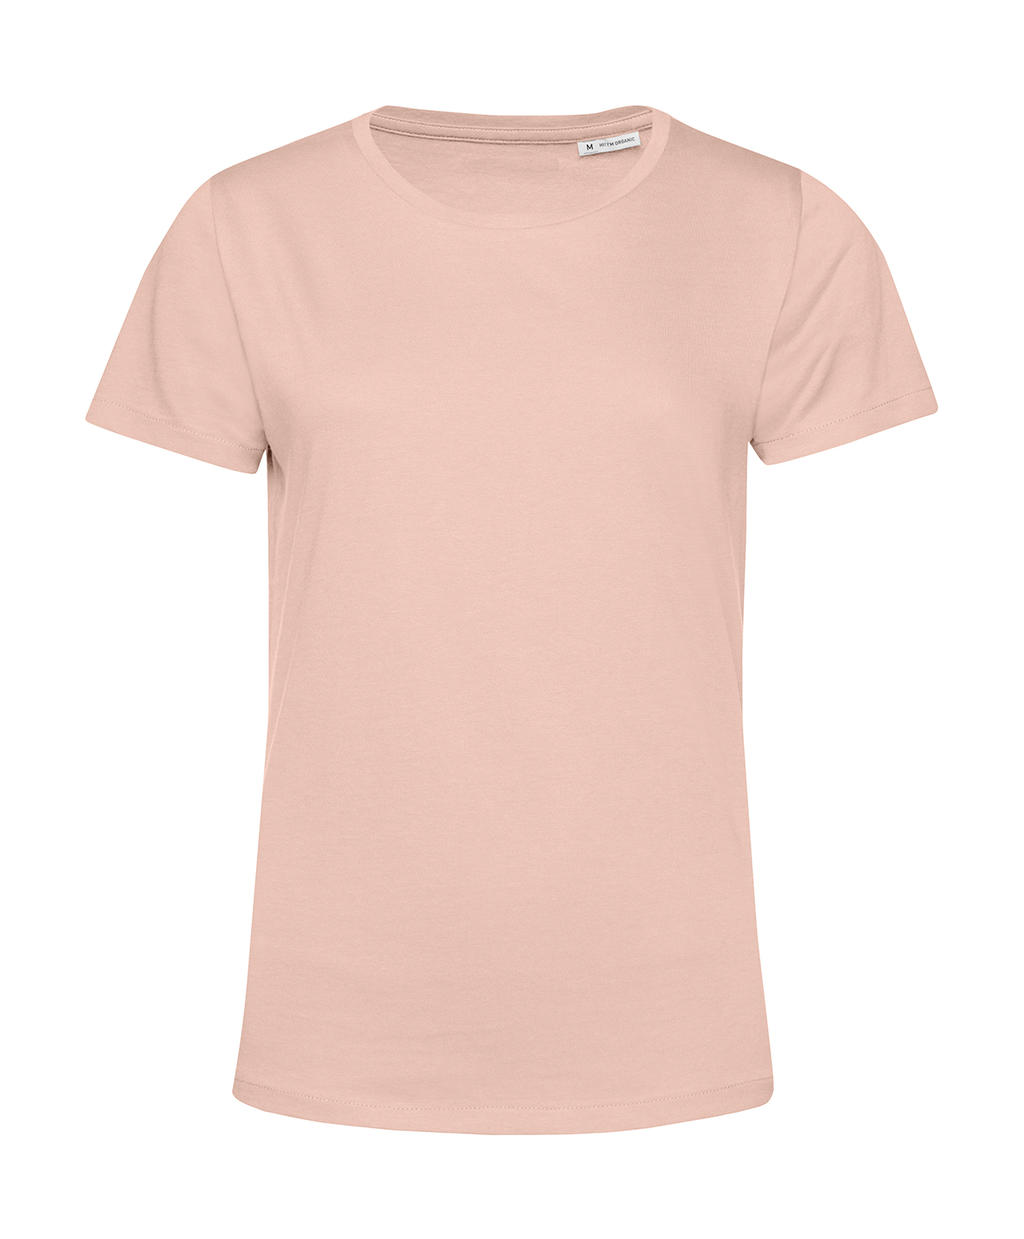 Tričko dámské BC Organic Inspire E150 - světle růžové, XXL